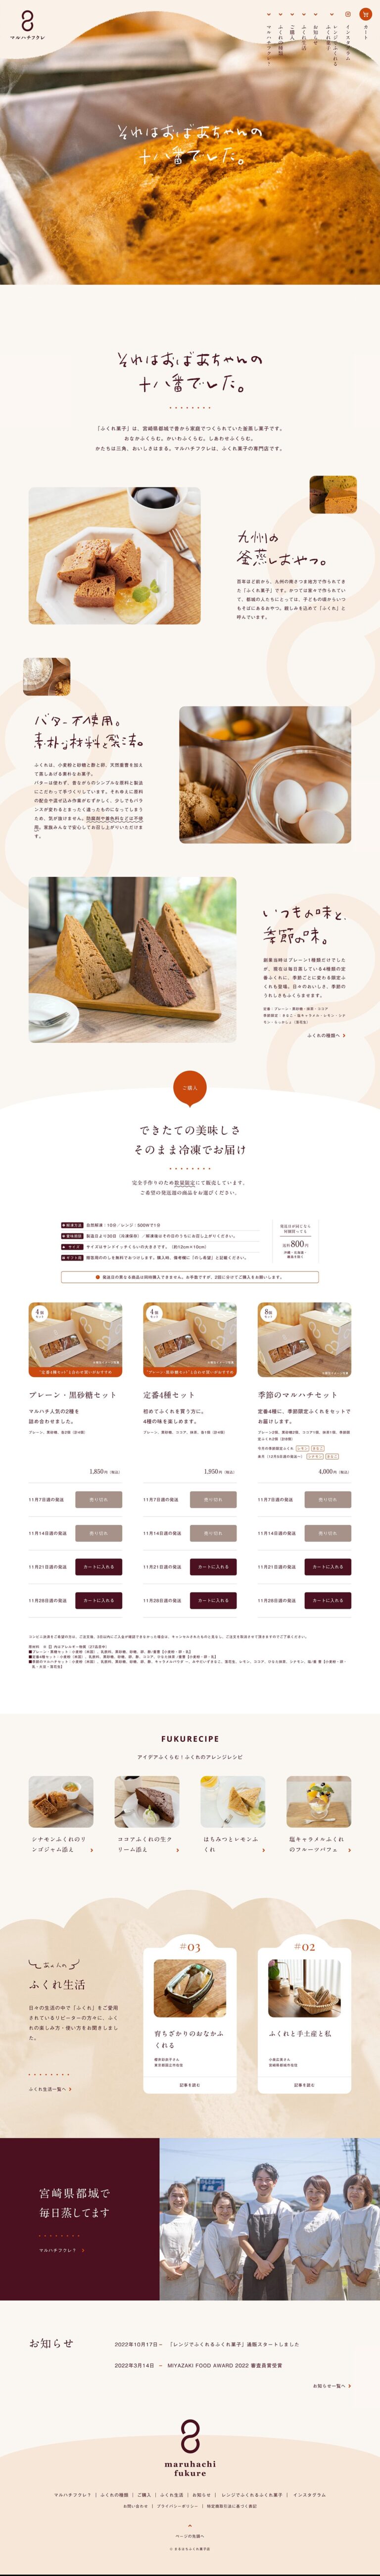 マルハチフクレ | 宮崎県都城のまるはちふくれ菓子店公式オンラインストア